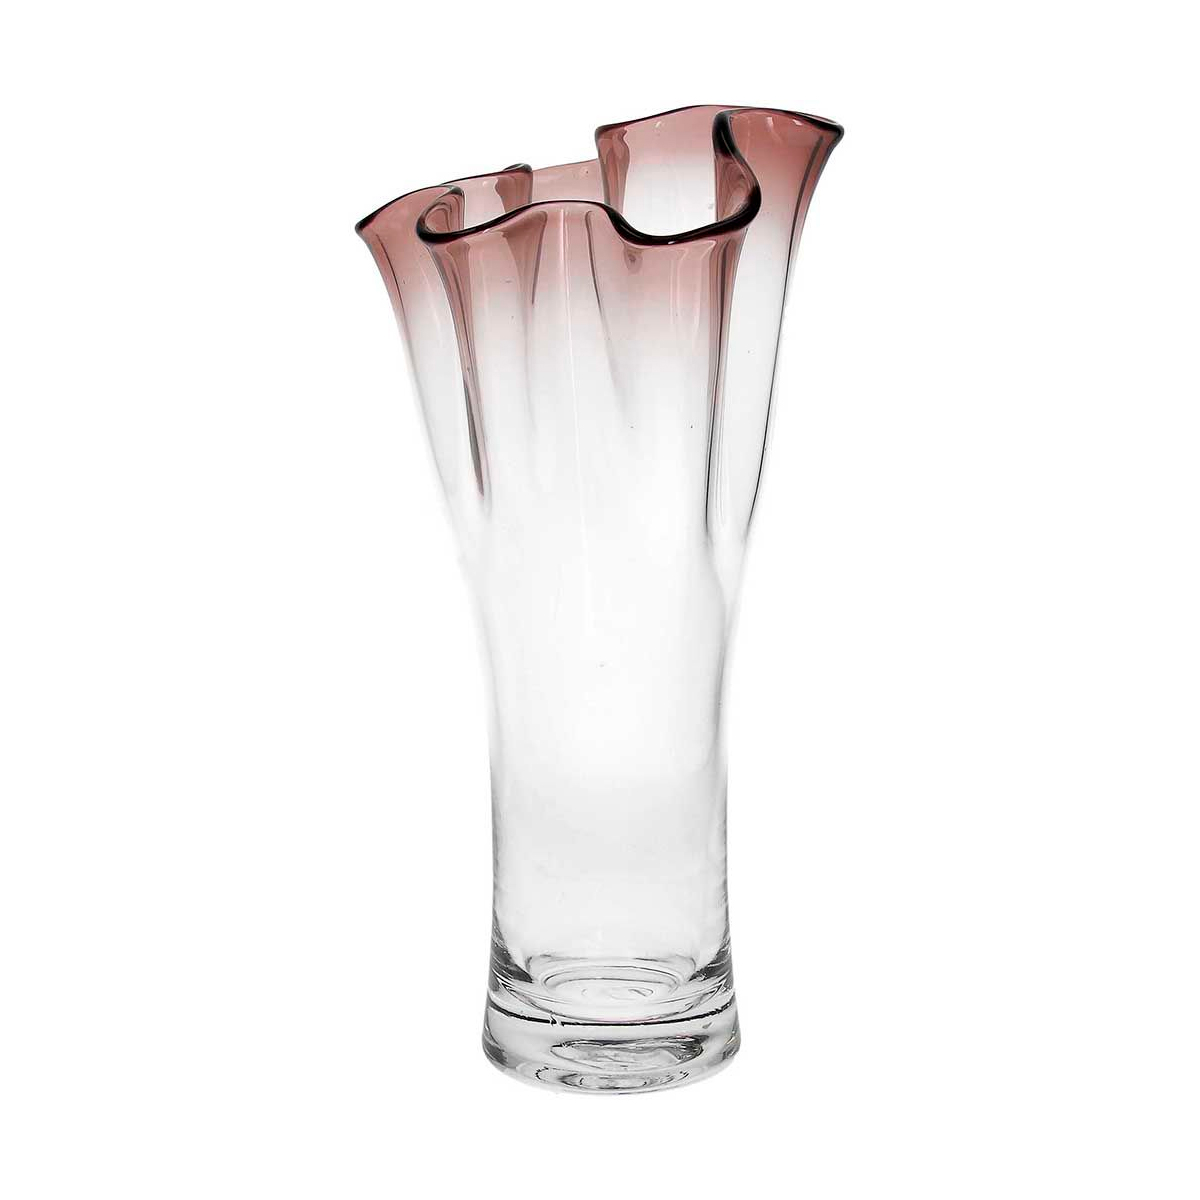 Ваза Andrea Fontebasso Glass Design Bizarre 32см, цвет коричневый часы песочные andrea fontebasso glass design time 24см